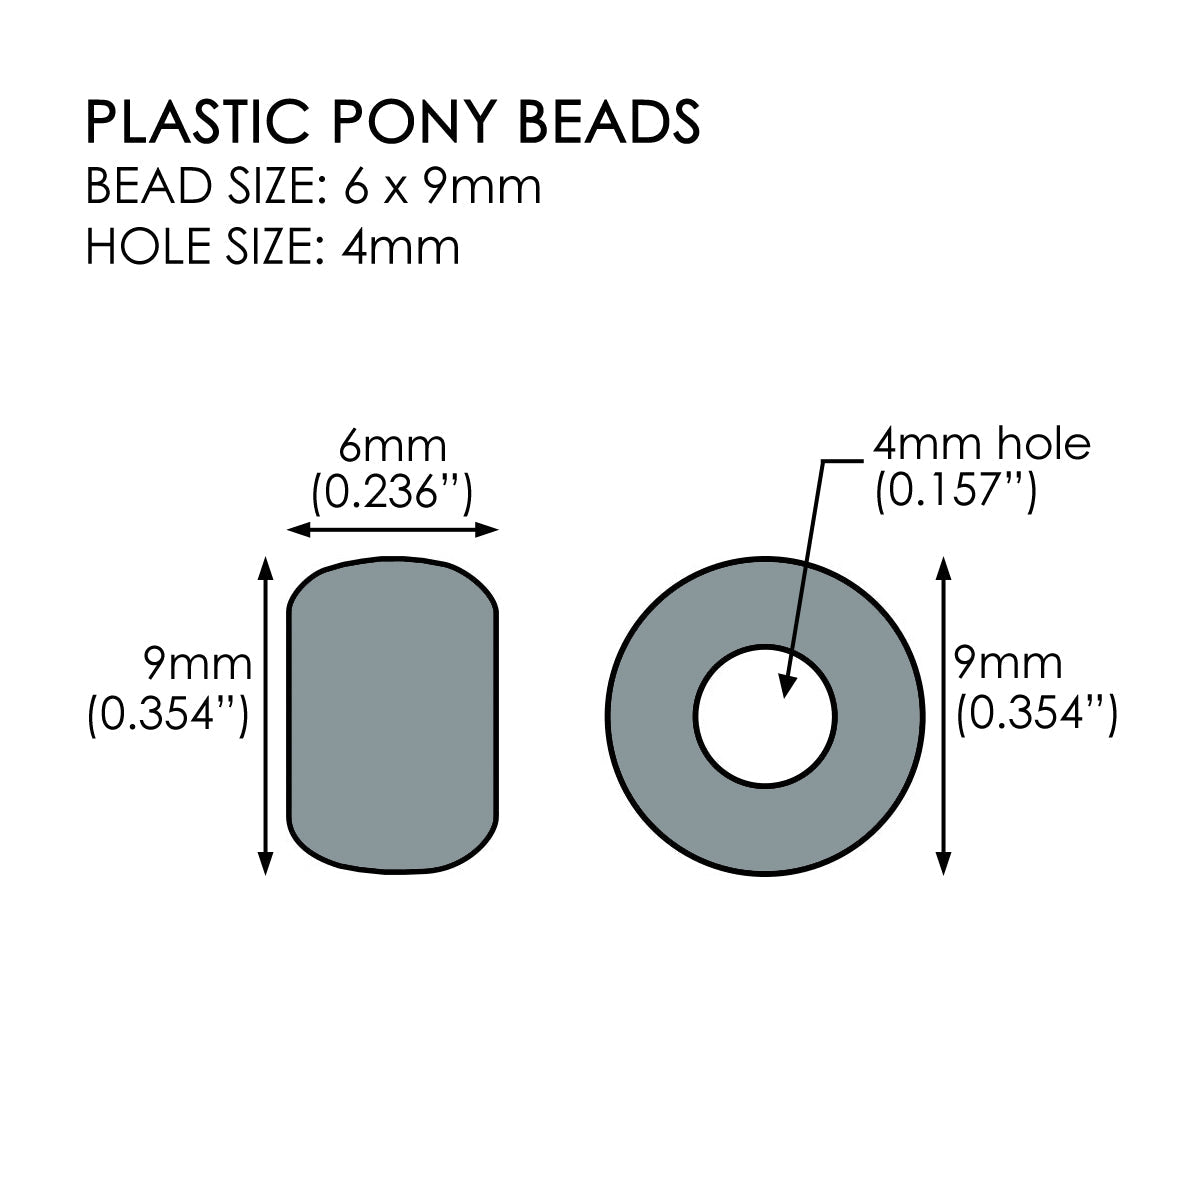 Black Tie Mix Plastic Pony Beads 6 x 9mm